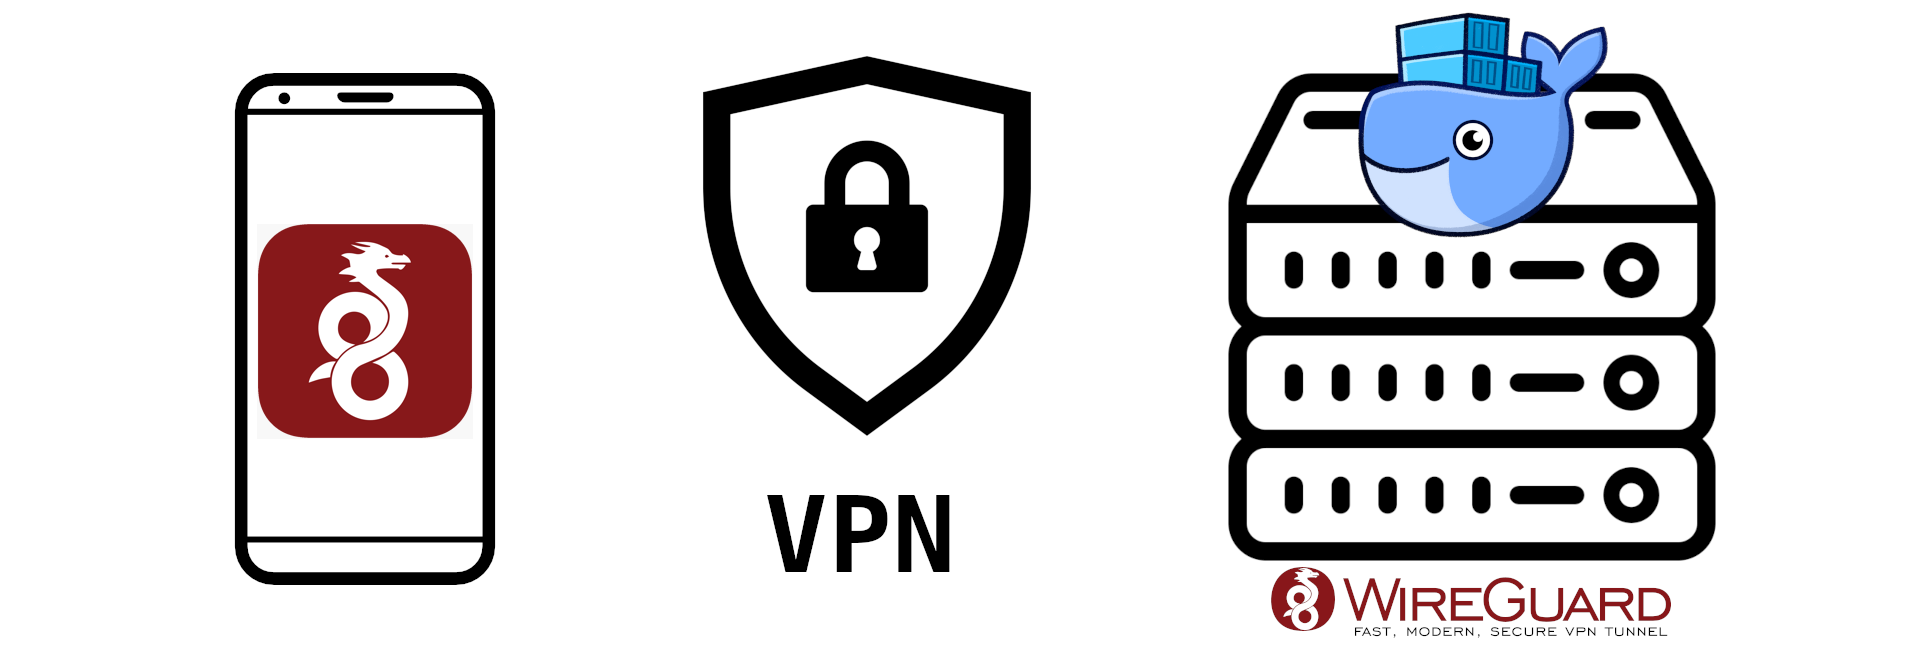 Иконка смартфона с wireguard, vpn, и иконка сервера с иконкой докера